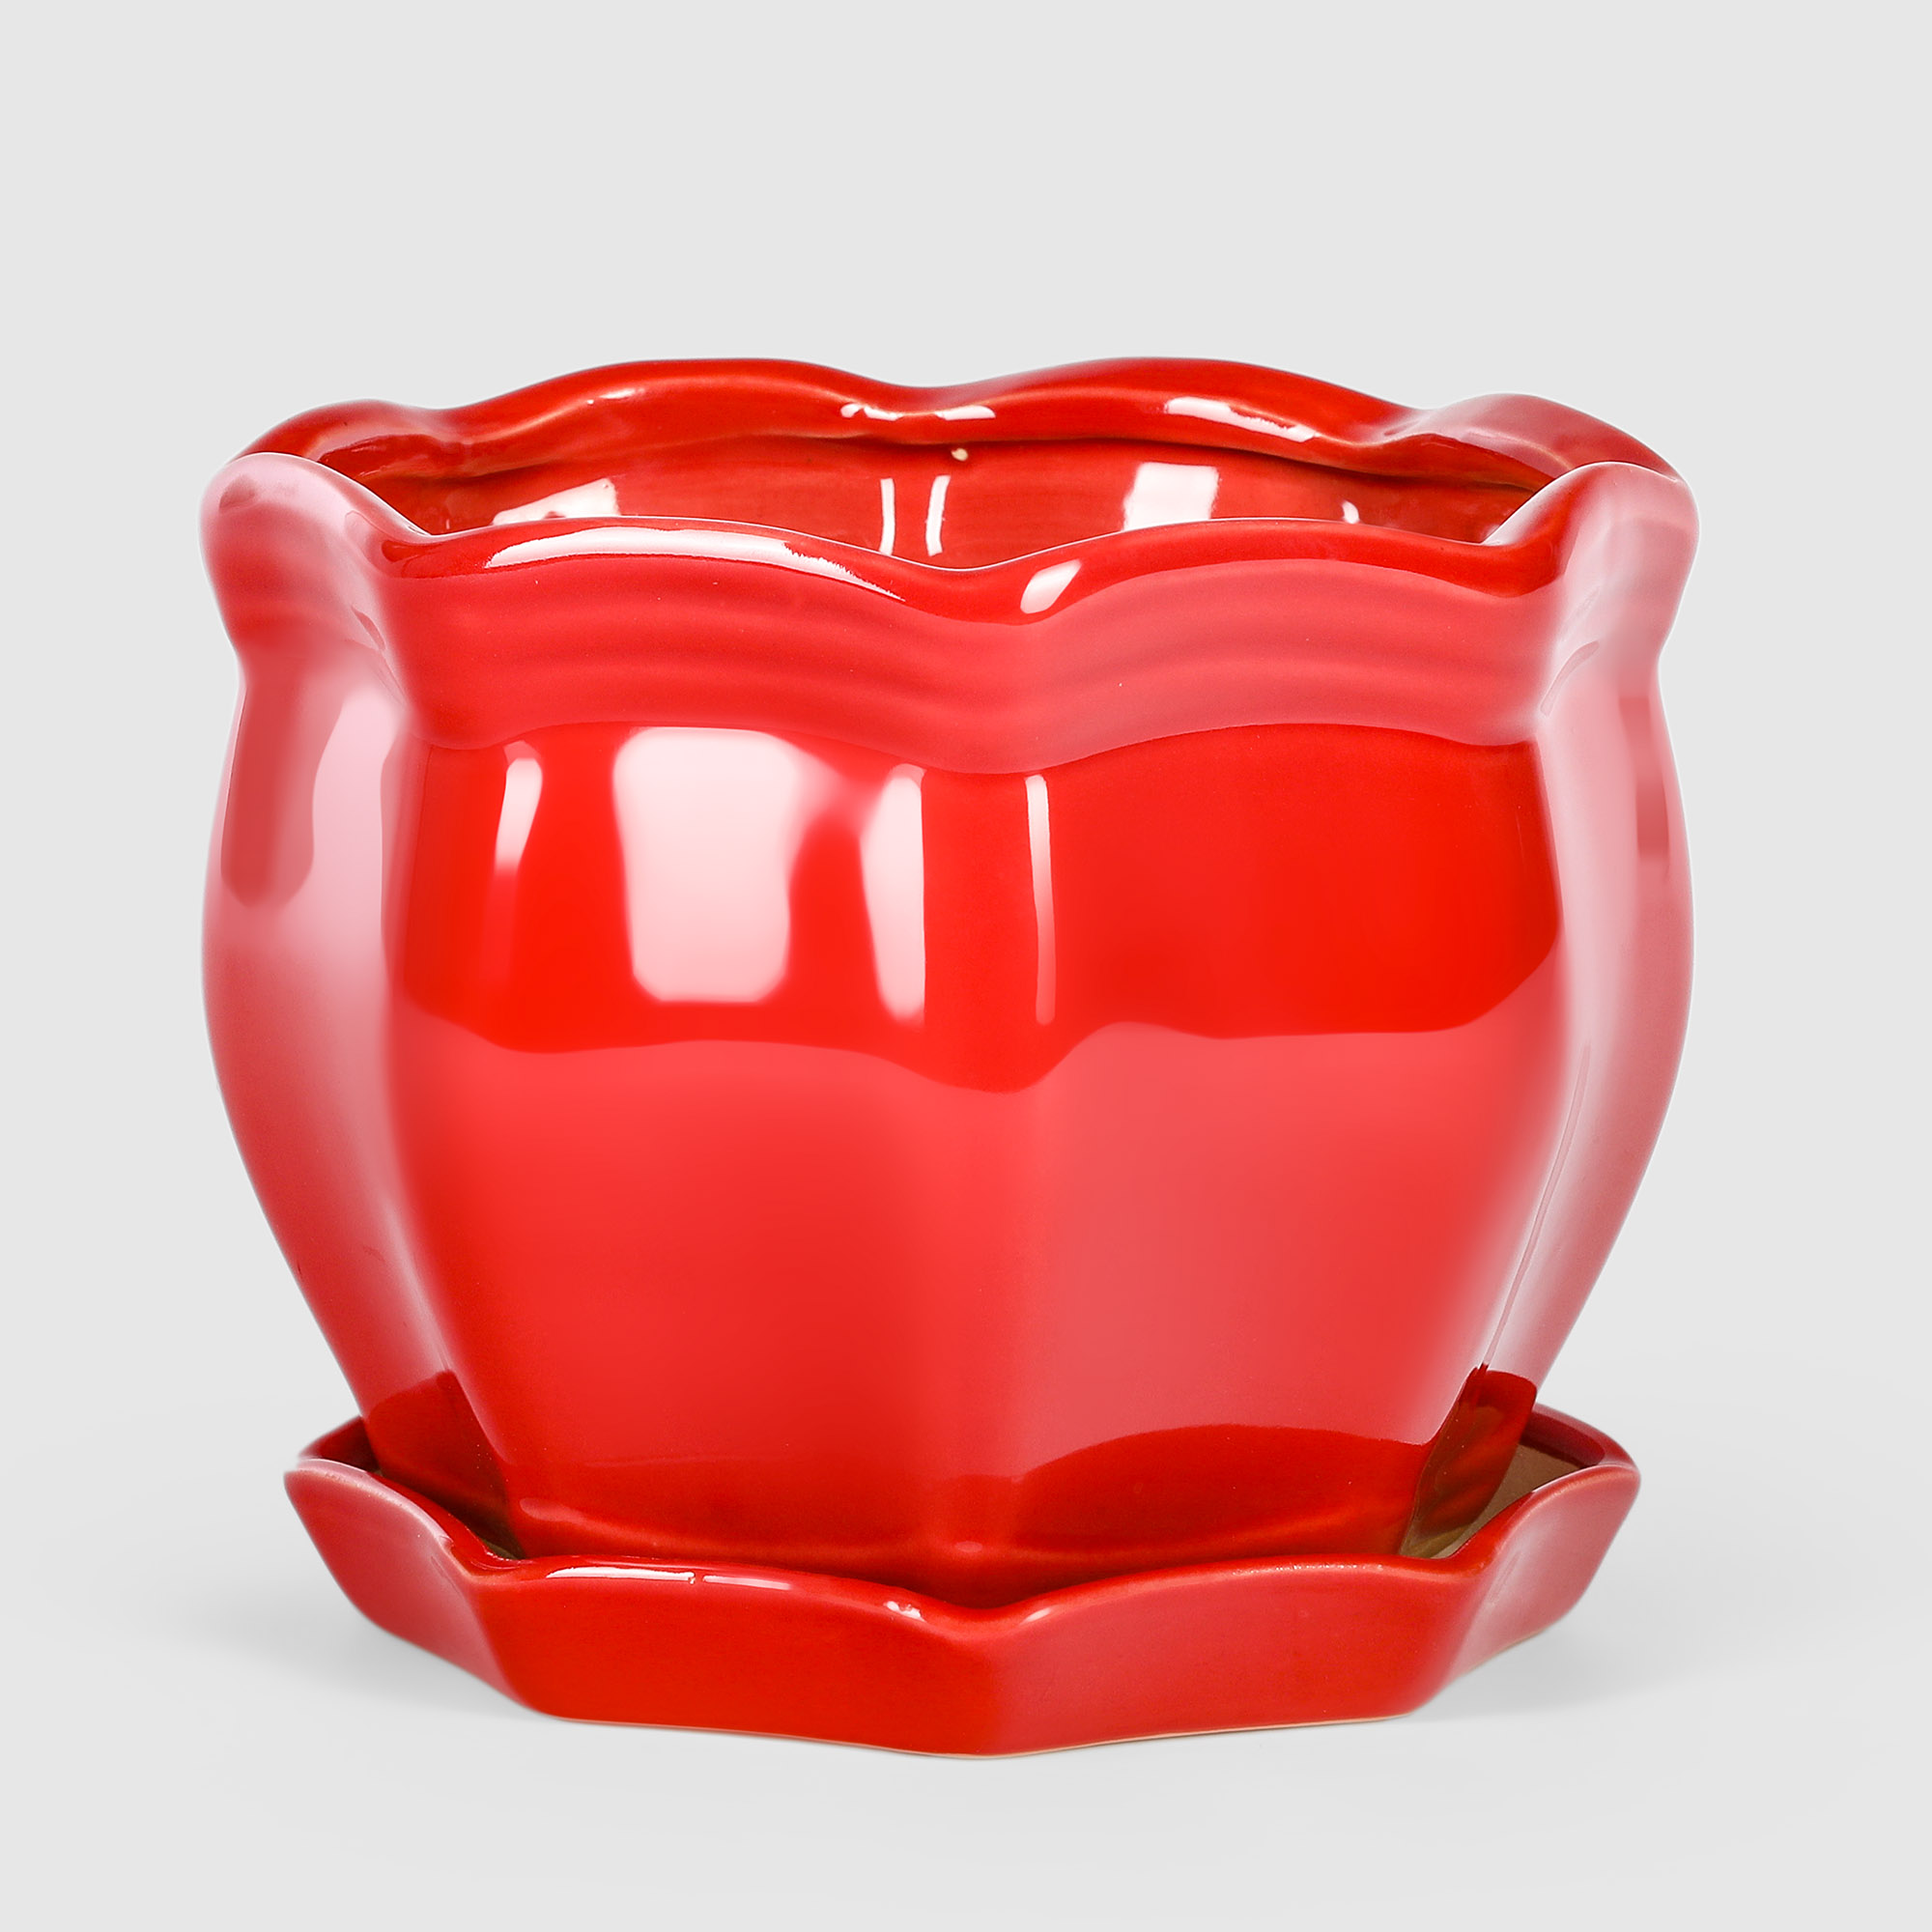 очное кашпо дарим красиво двушка лайт реечное р00015961 0 2 л красный 1 шт Кашпо керамическое для цветов Shine Pots 15x11см красный глянец